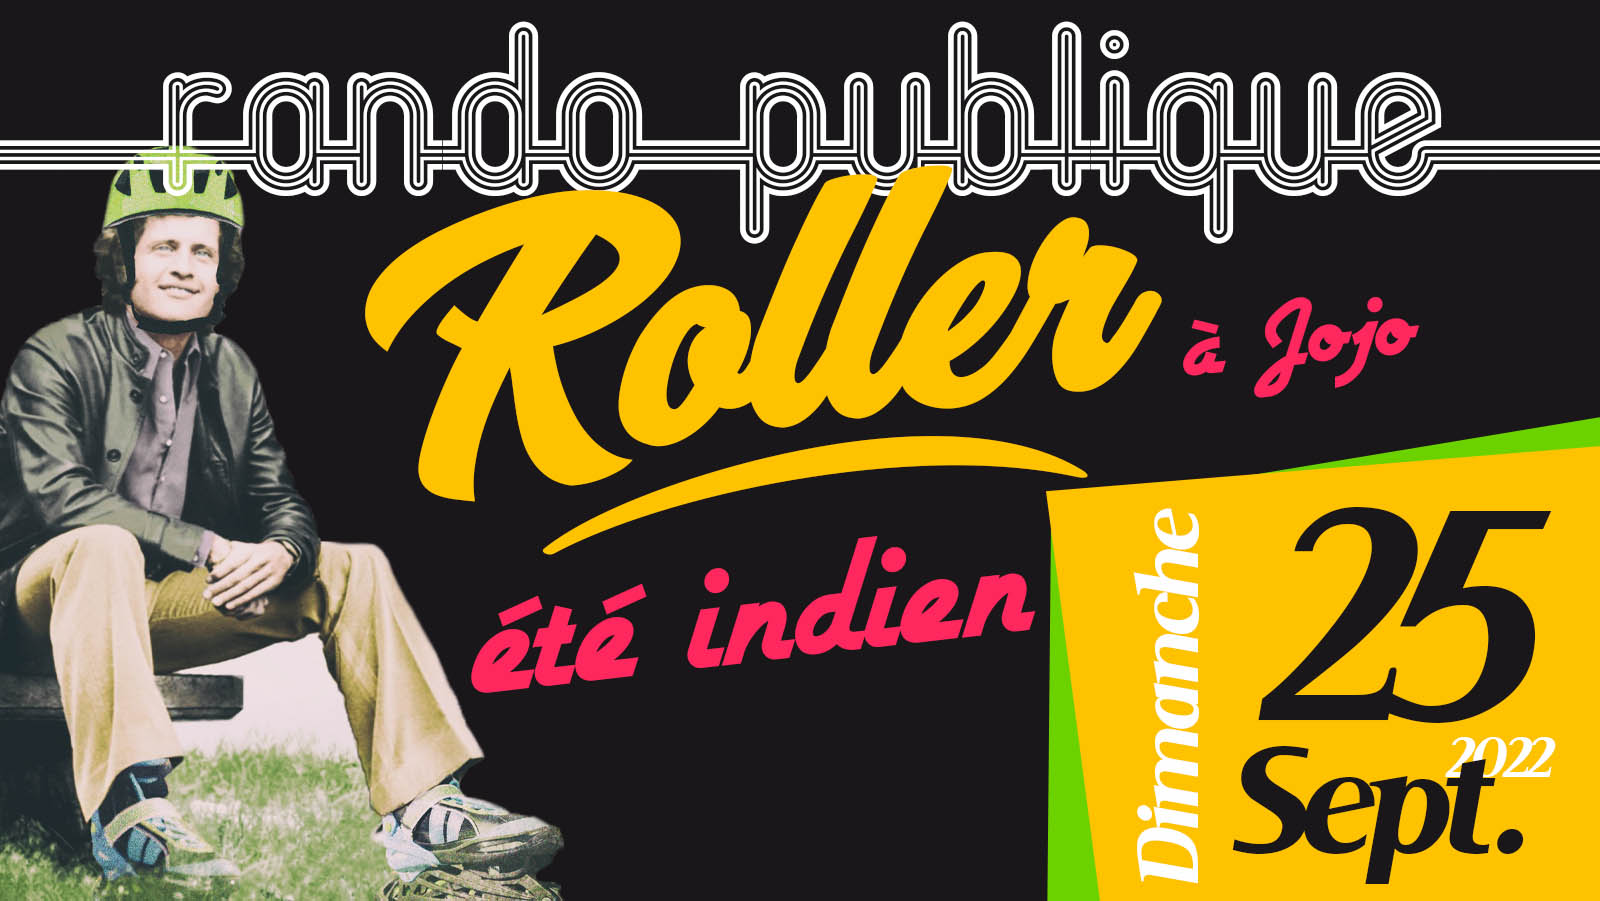 TCR Rando Roller Eté Indien